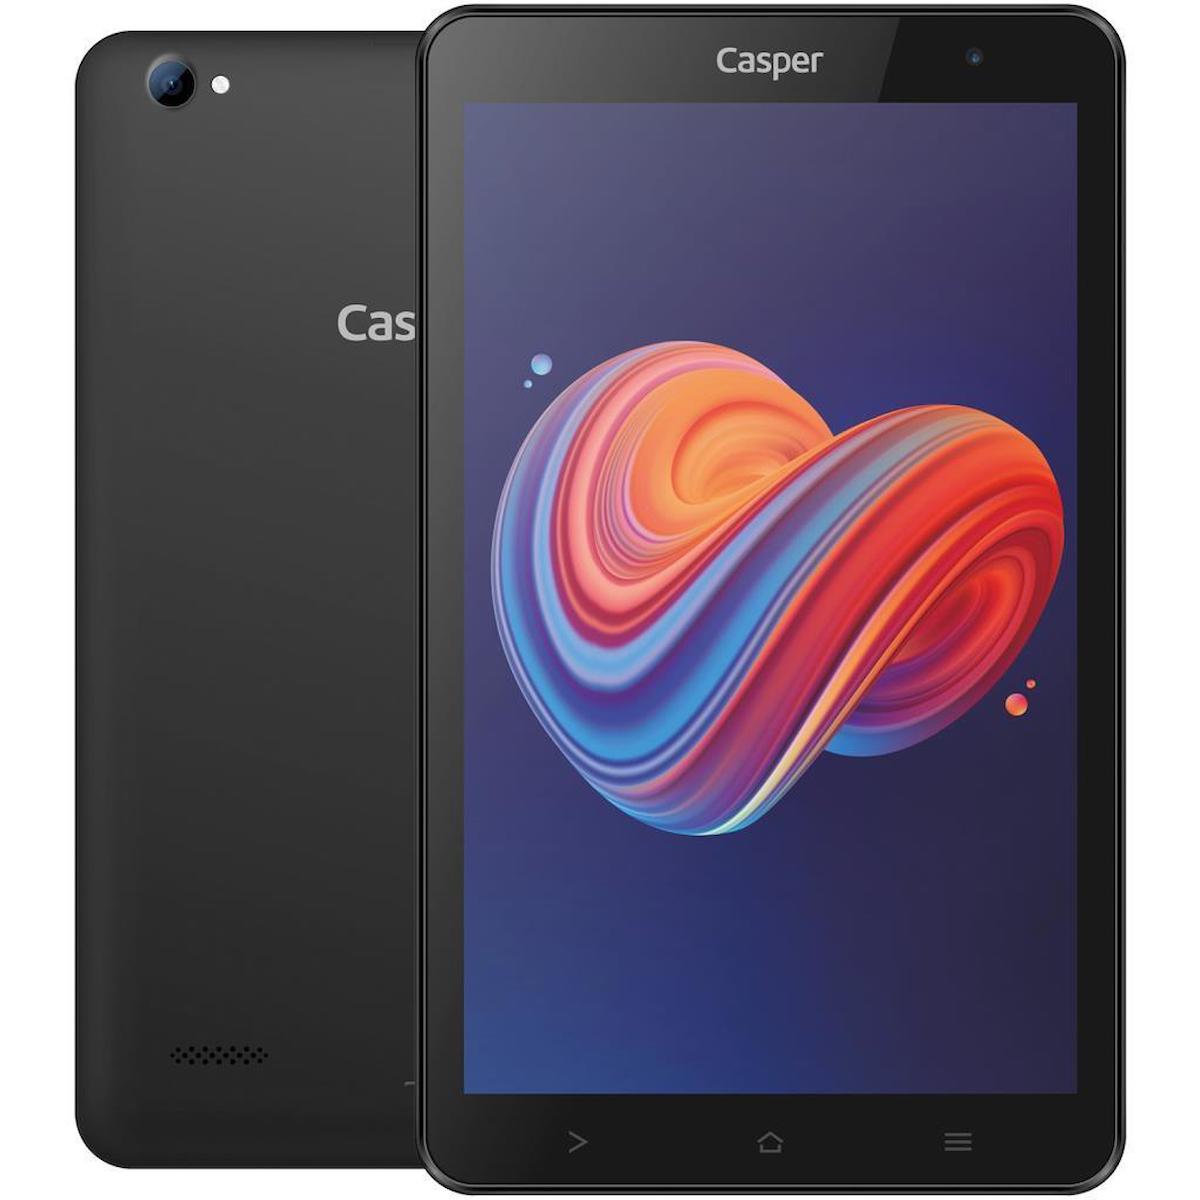 Casper VIA S48 32 GB Android 3 GB Ram 8.0 inç Tablet Siyah